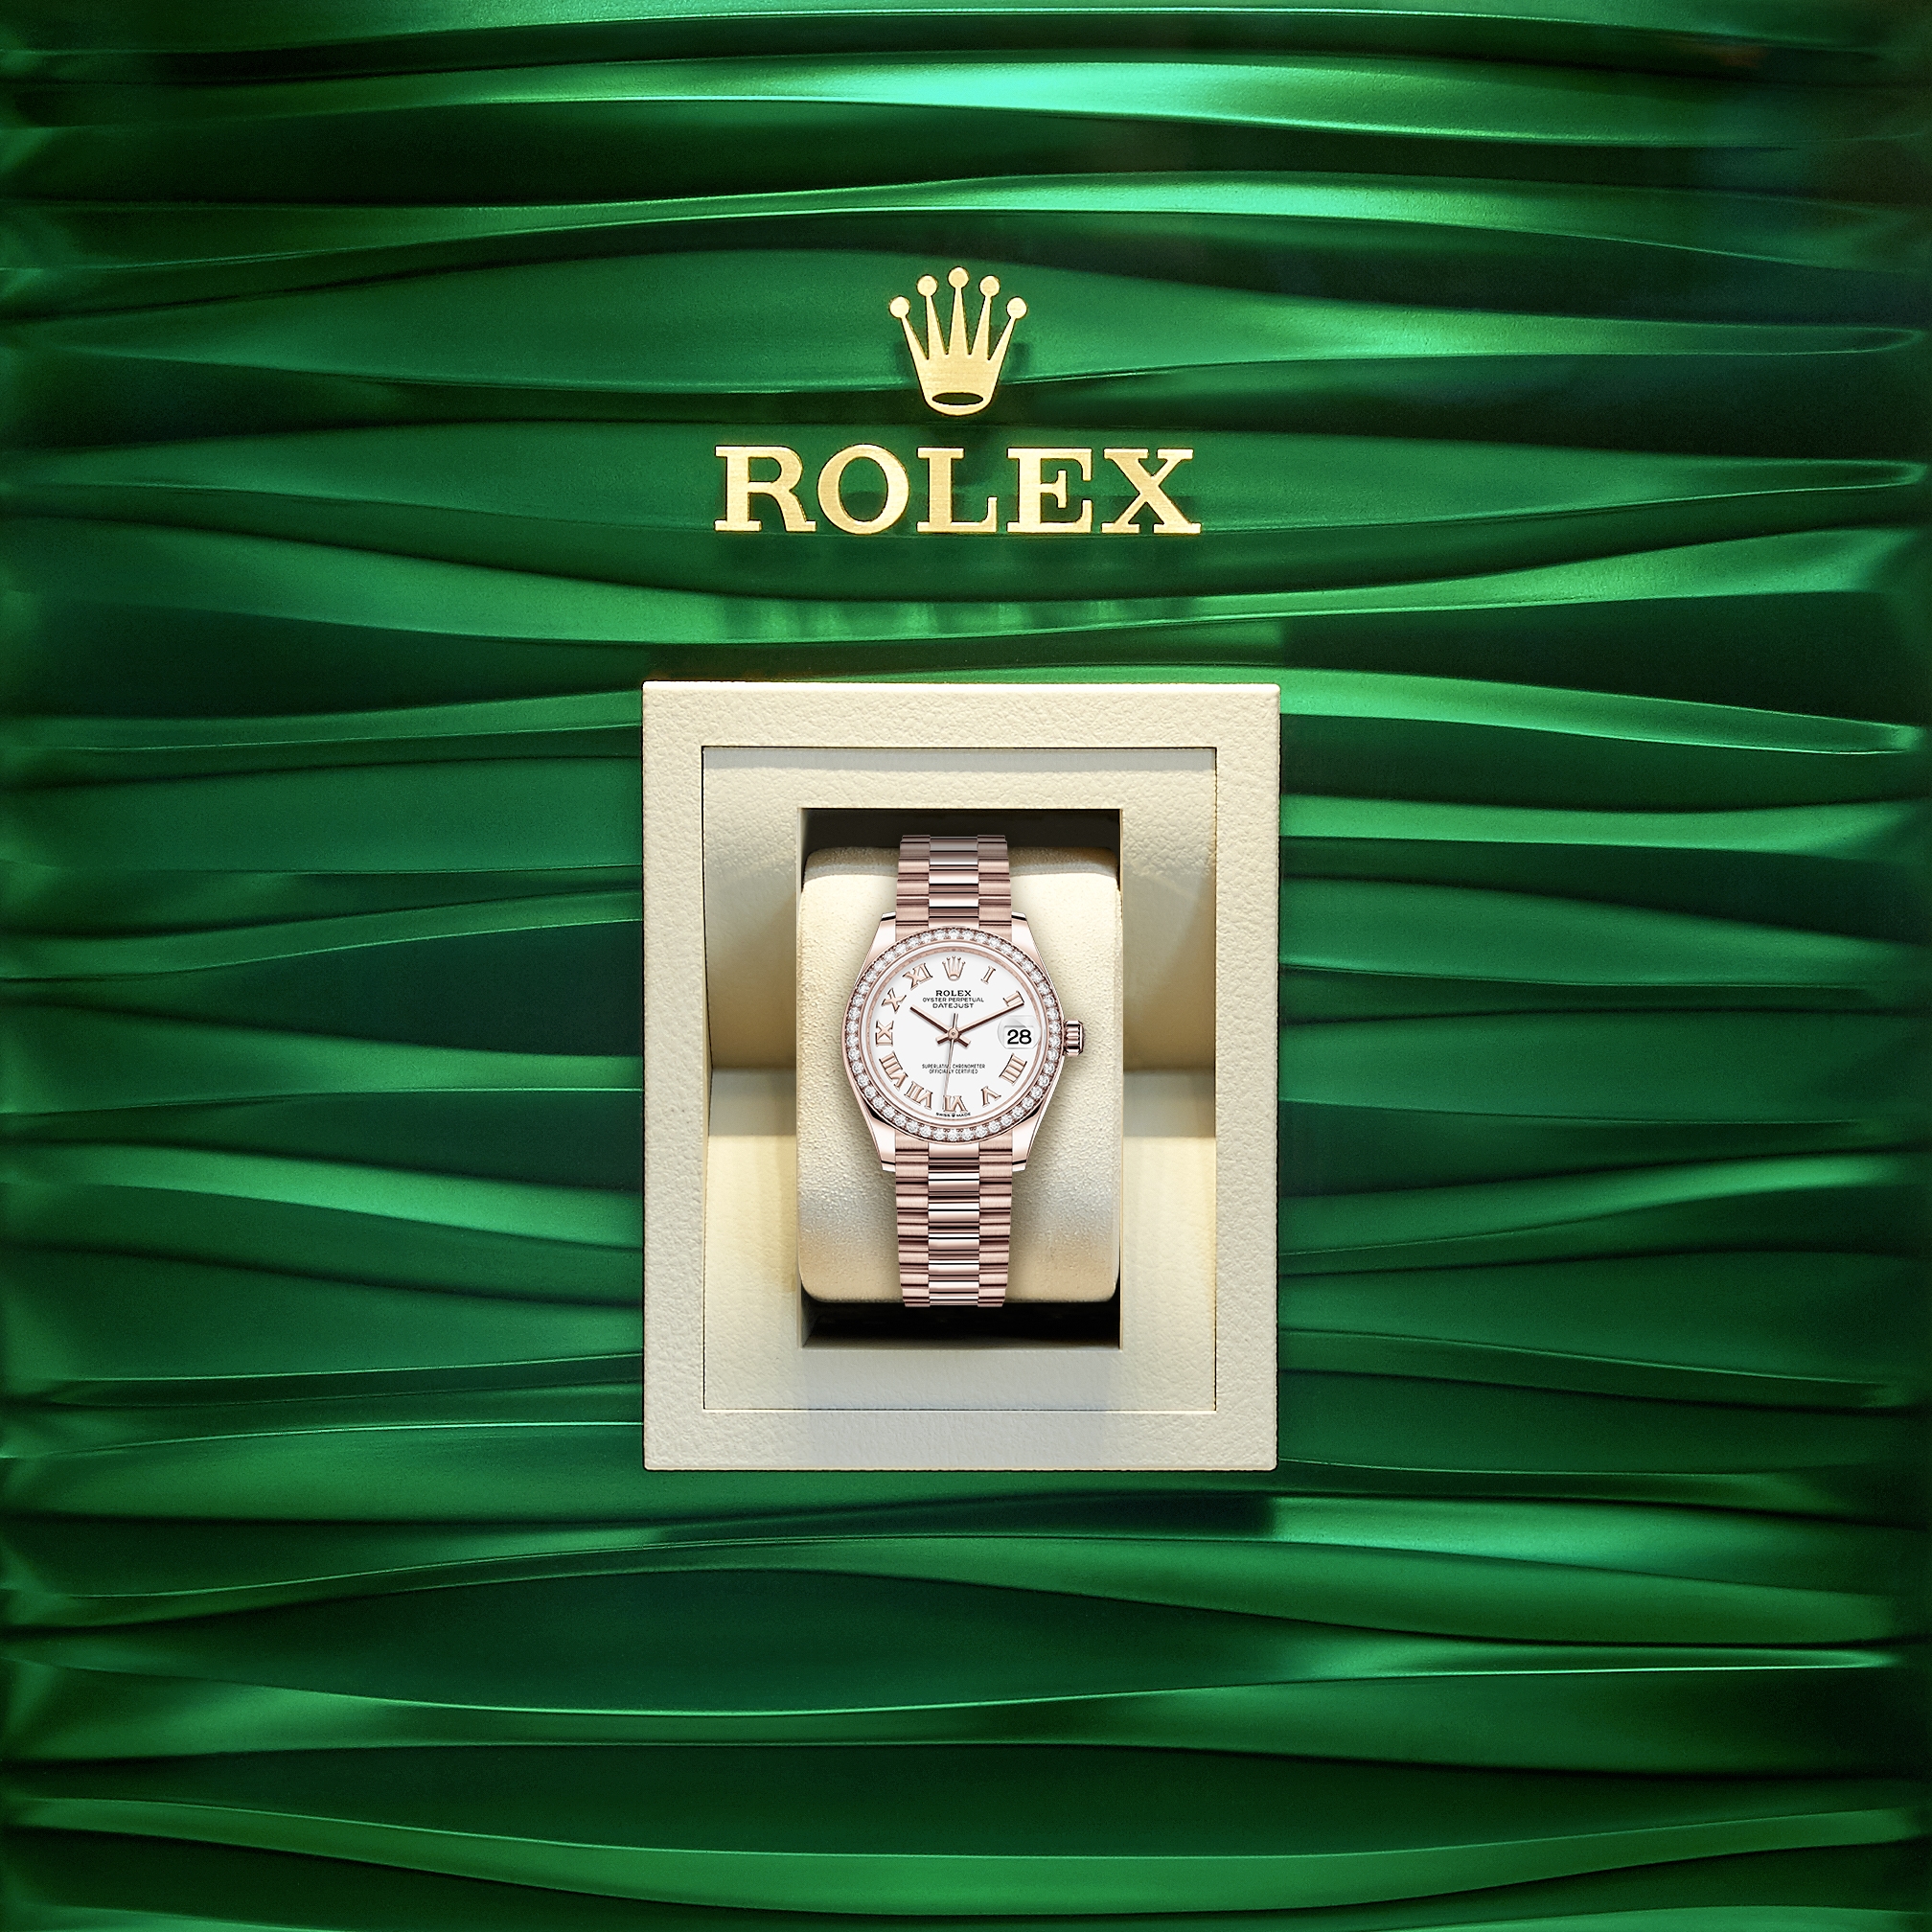 Rolex SUBMARINER REF. 5513 – MAXI DIAL